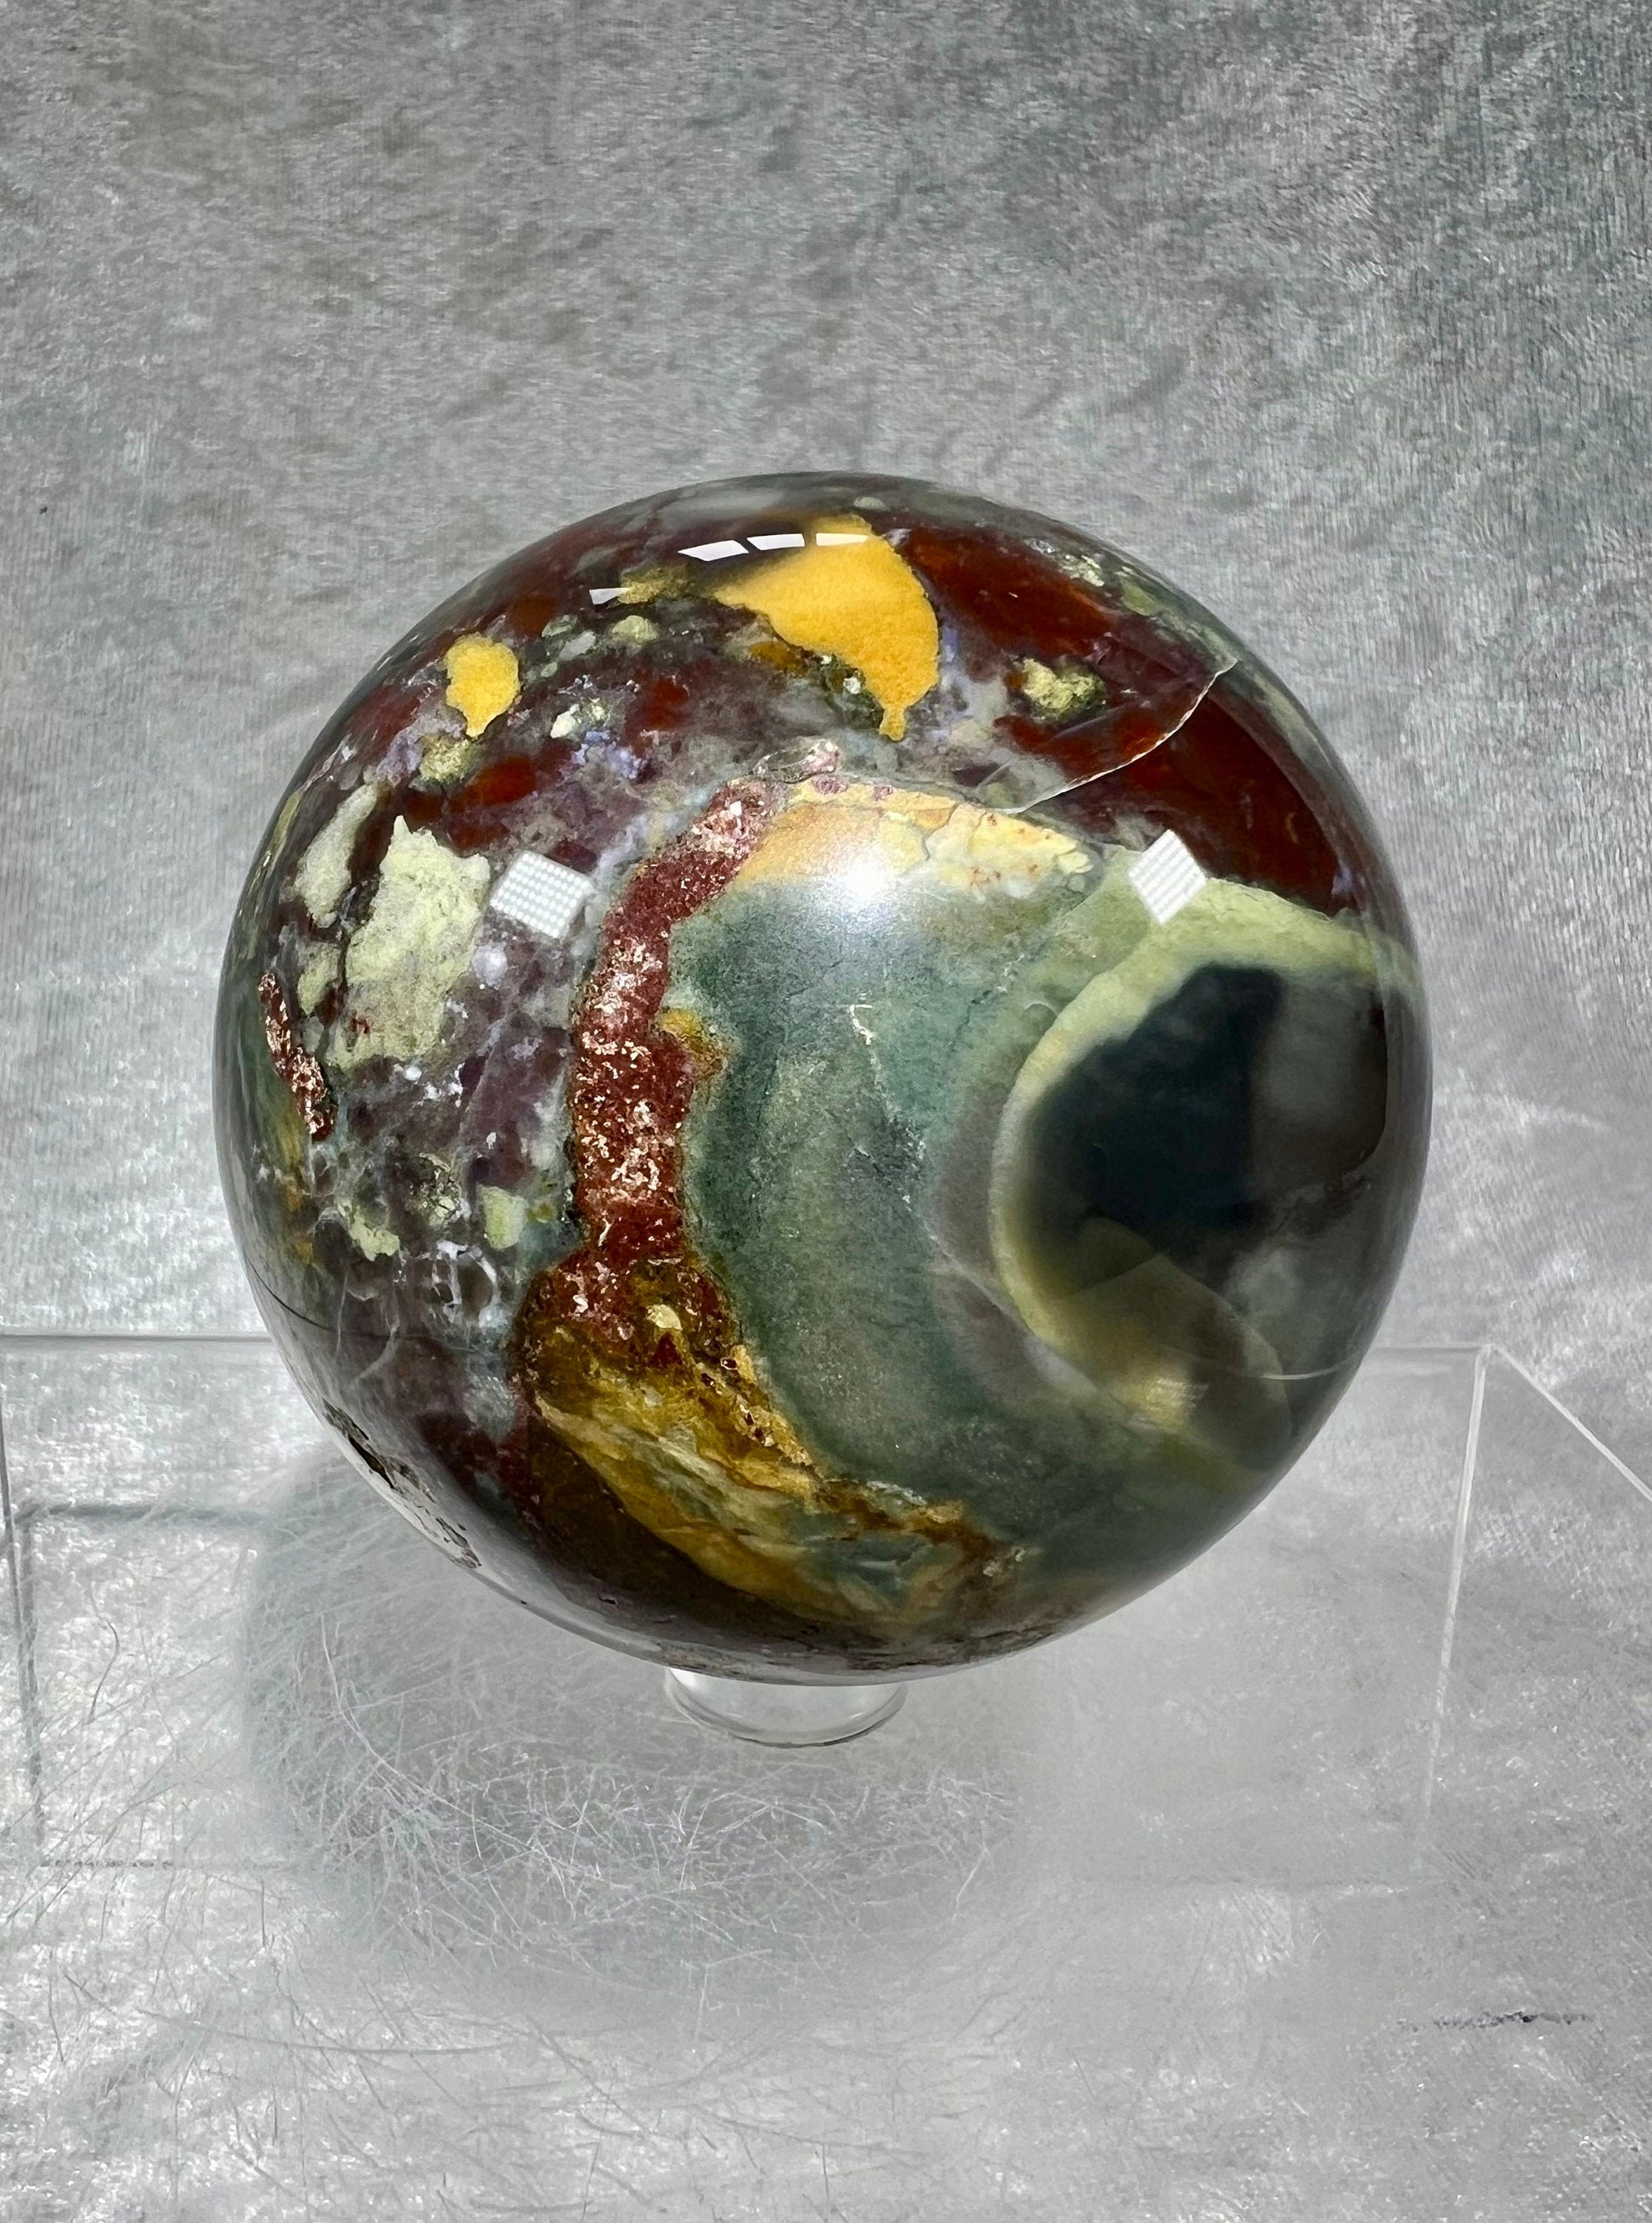 Amazing Colorful Ocean Jasper Sphere. 72mm. Wild Multi Colored Jasper. Gorgeous Crystal Display Sphere.